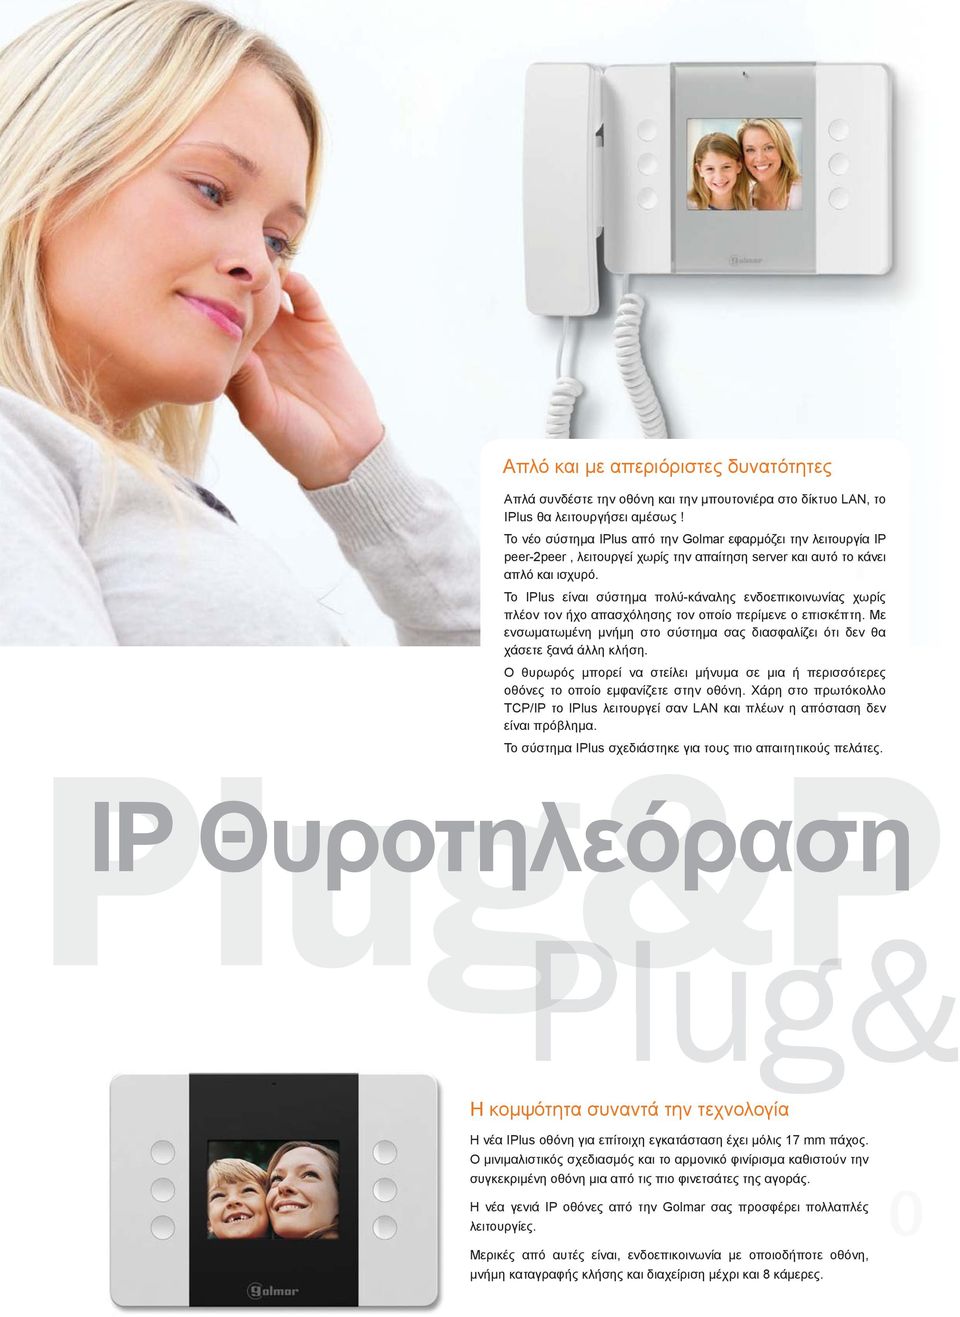 Το IPlus είναι σύστημα πολύ-κάναλης ενδοεπικοινωνίας χωρίς πλέον τον ήχο απασχόλησης τον οποίο περίμενε ο επισκέπτη.